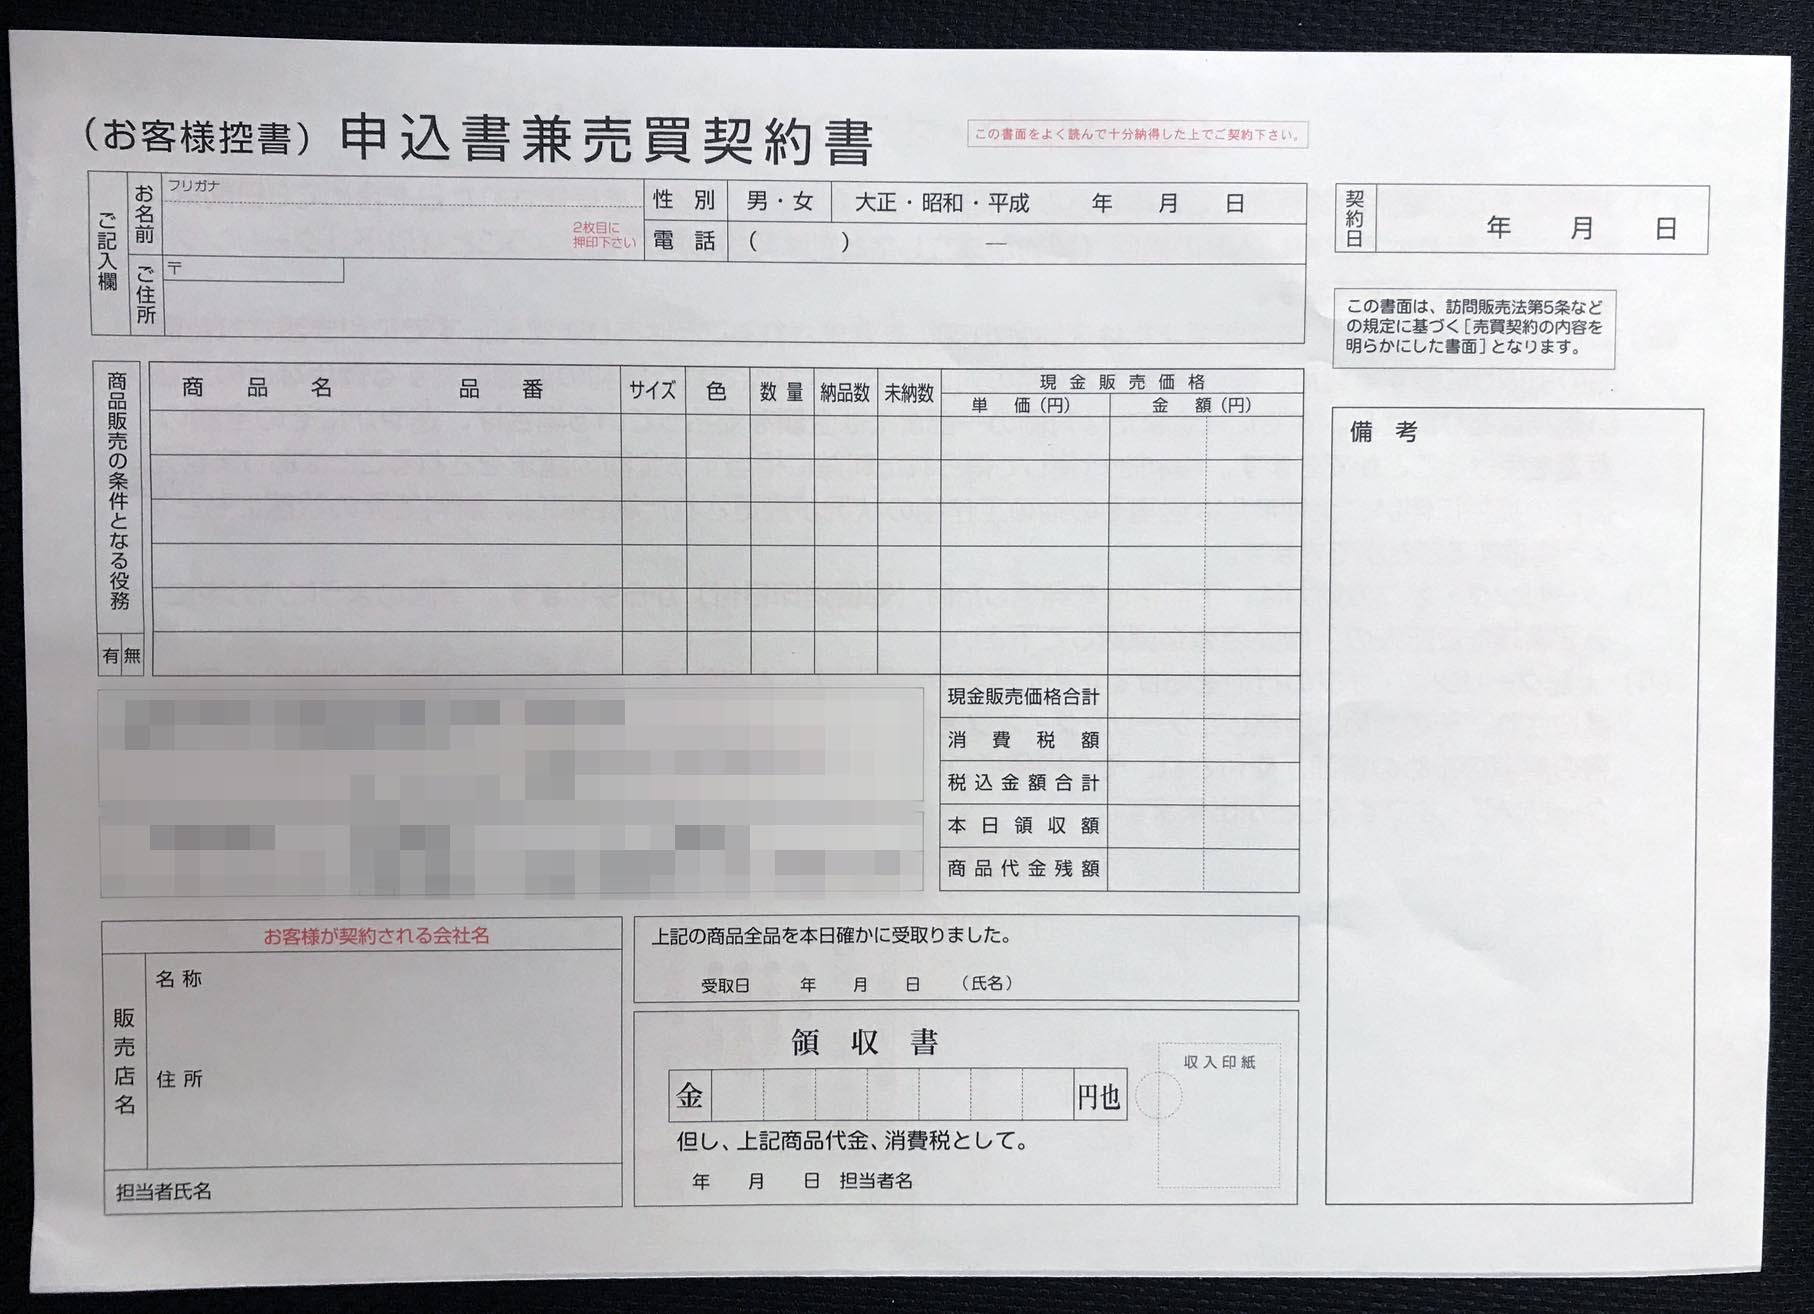 神奈川県　健康機器販売業　申込書兼売買契約書　(２枚複写)